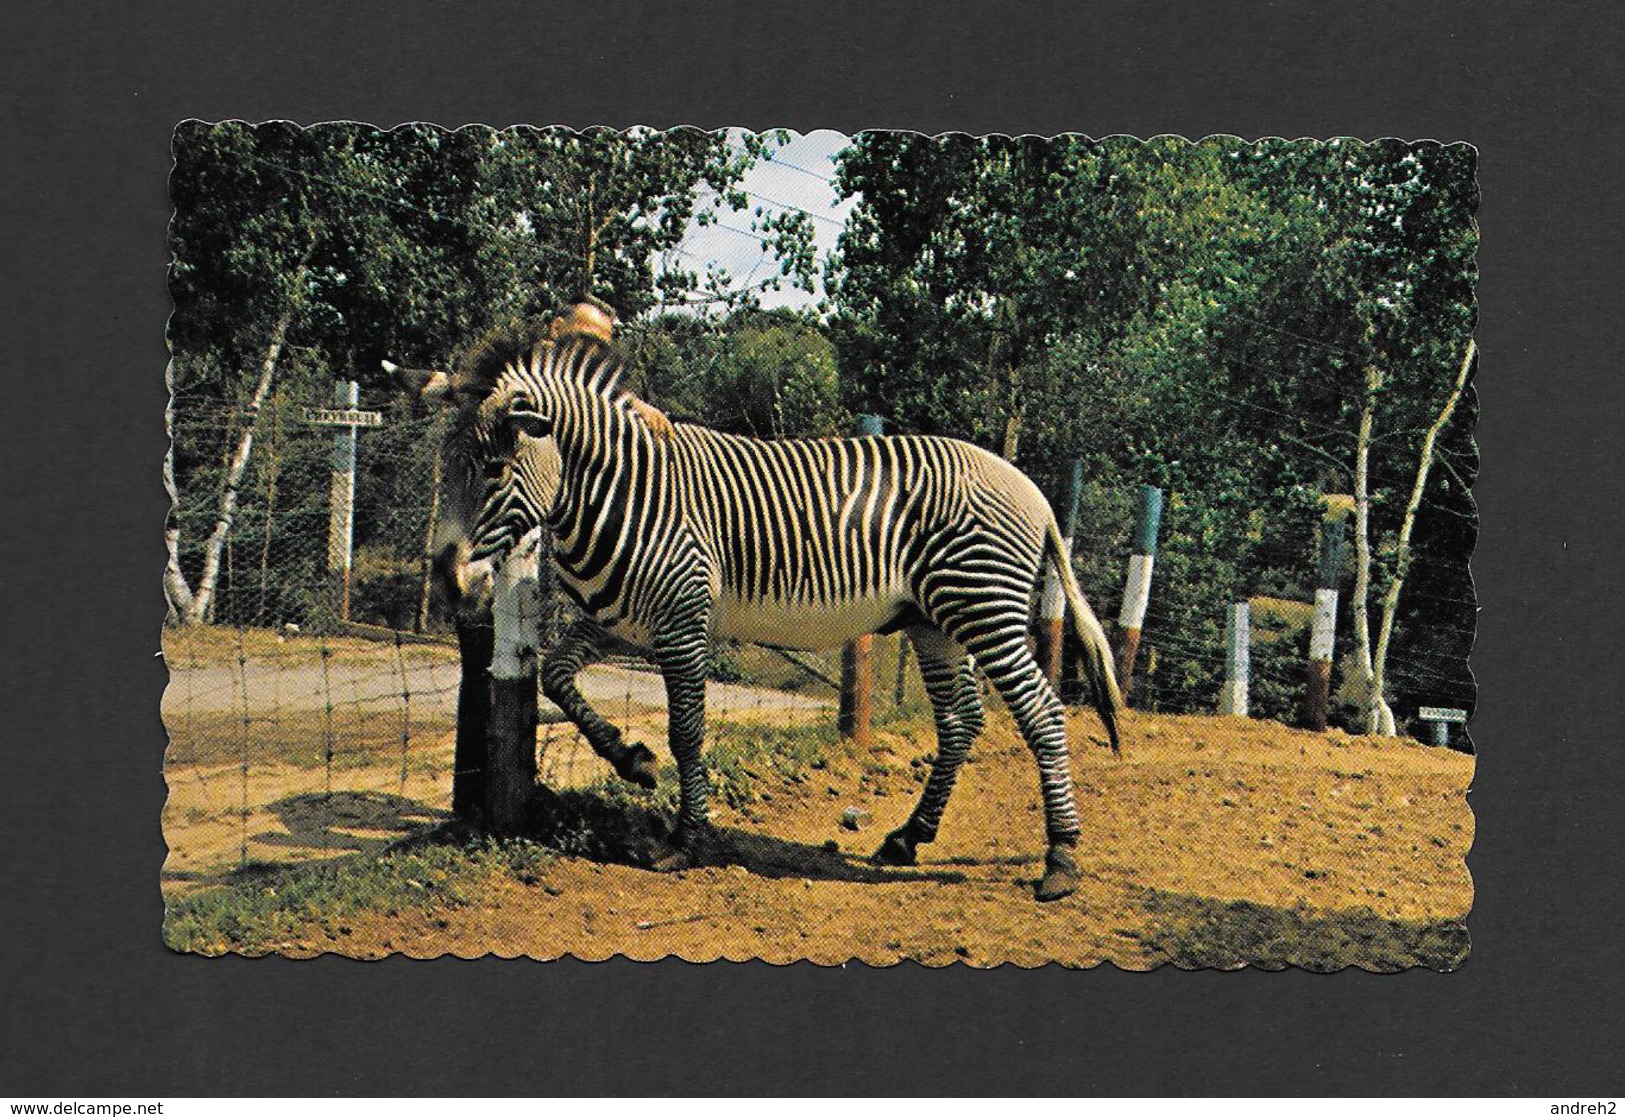 ANIMAUX - ANIMALS - MAGNIFIQUE ZÈBRE - ZOO ST ÉDOUARD  Cté. MASQUINONGÉ - QUÉBEC - PUB. J. BIENVENUE - Zebras